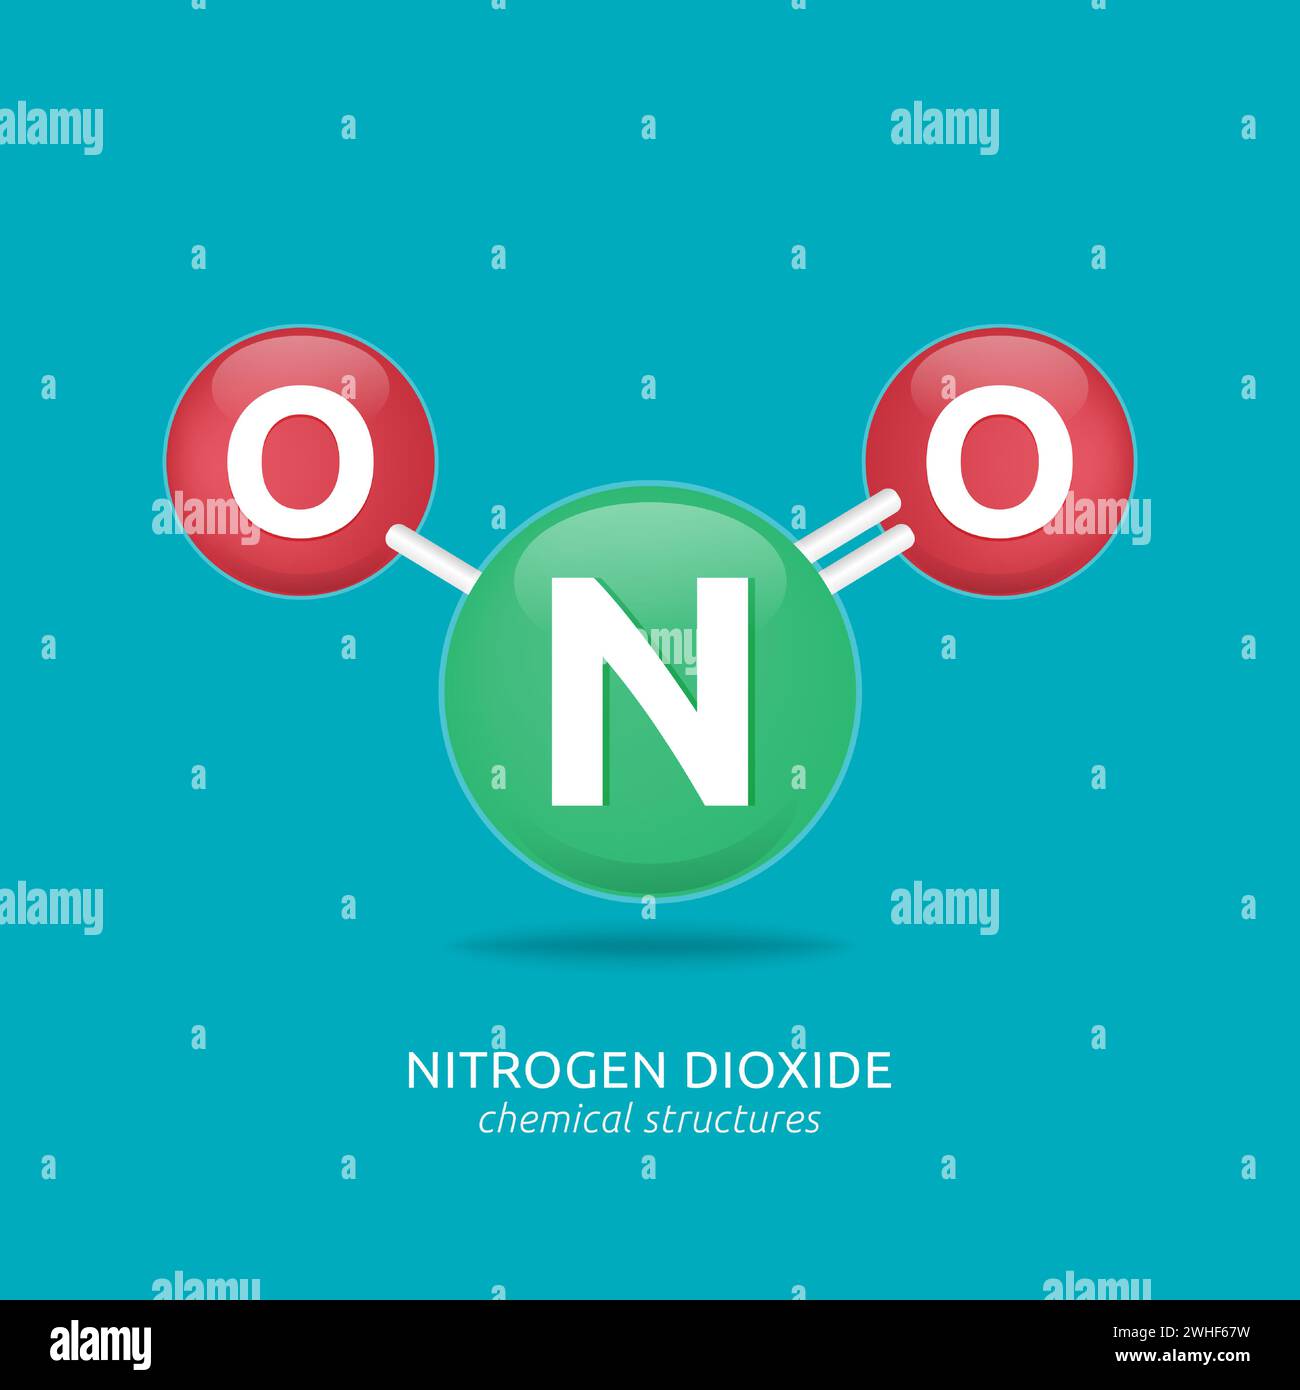 Formule de dioxyde d'azote, illustration vectorielle de structures chimiques Illustration de Vecteur